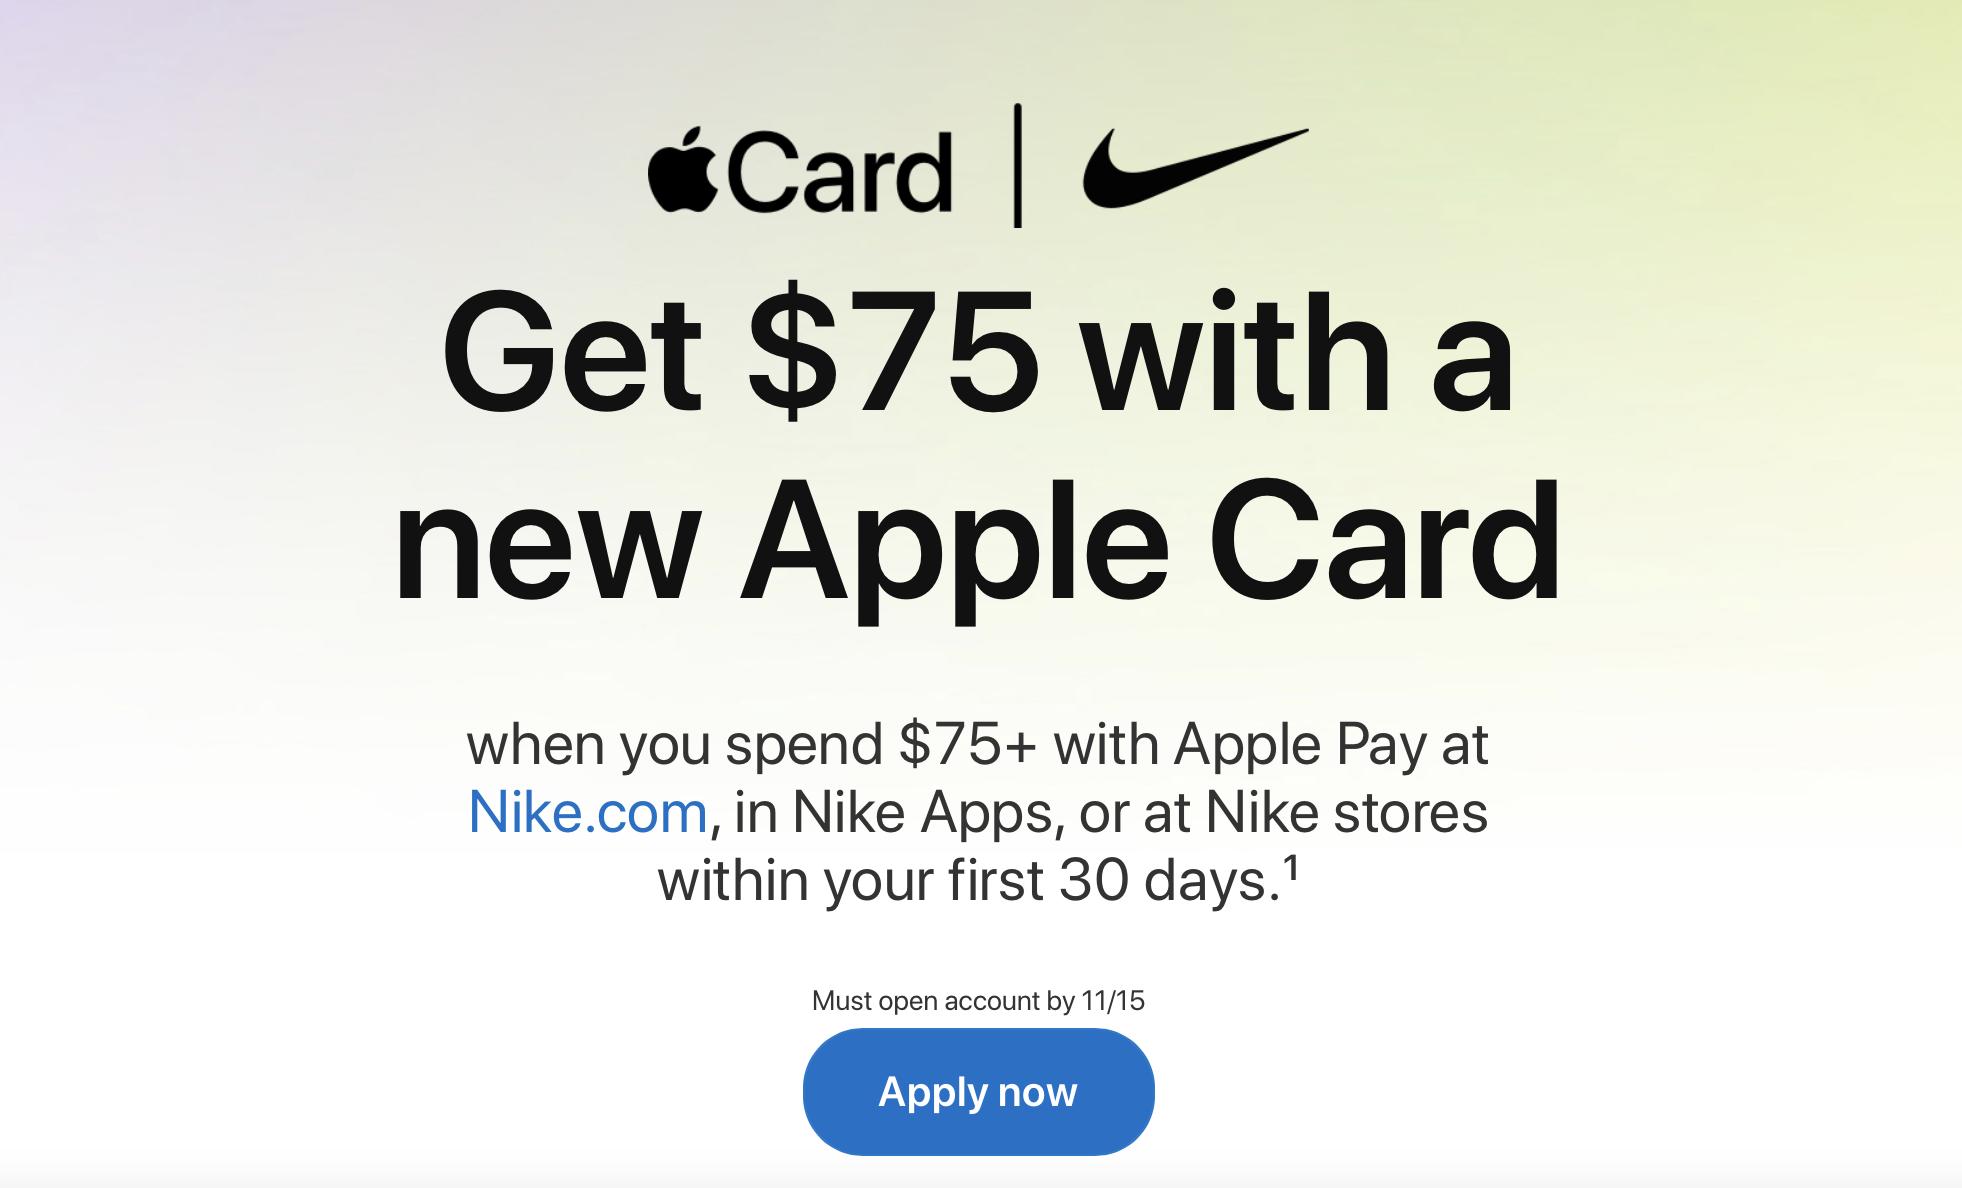 Apple Card New Nike Offer